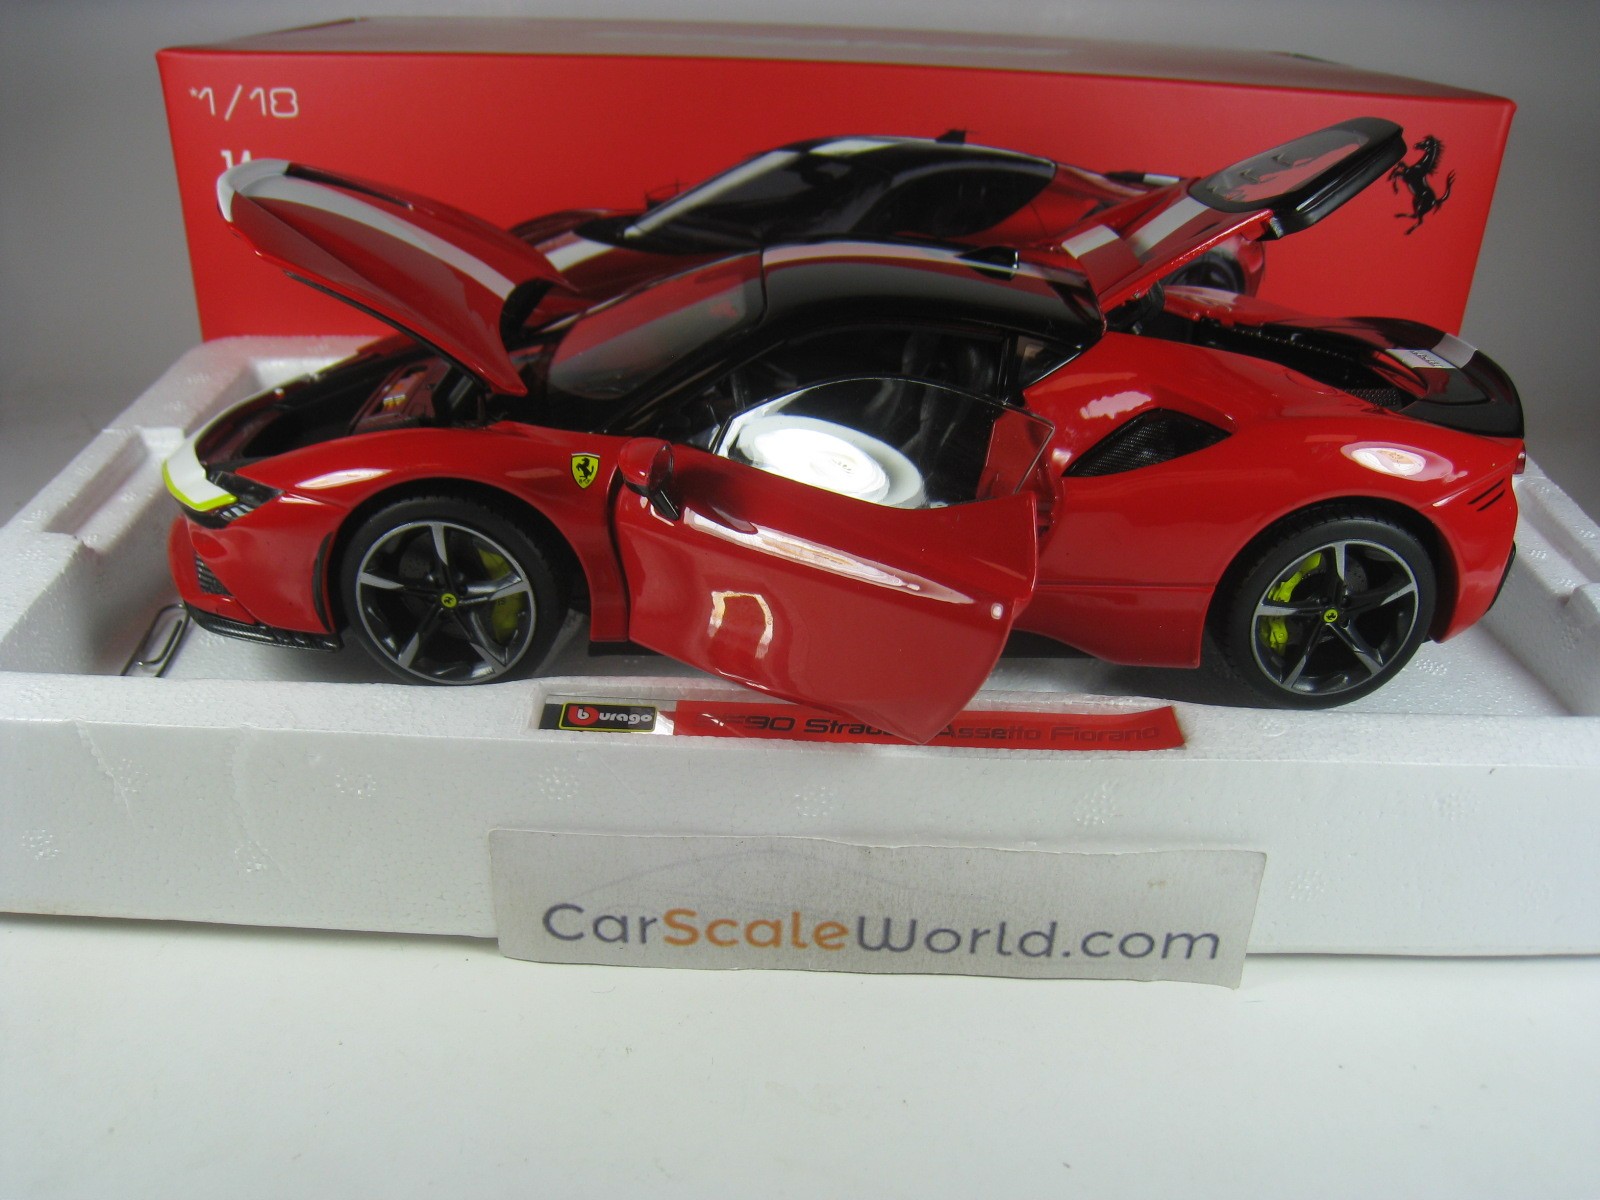 1/18 : Promotion sur la Ferrari SF90 Stradale Bburago Signature - PDLV